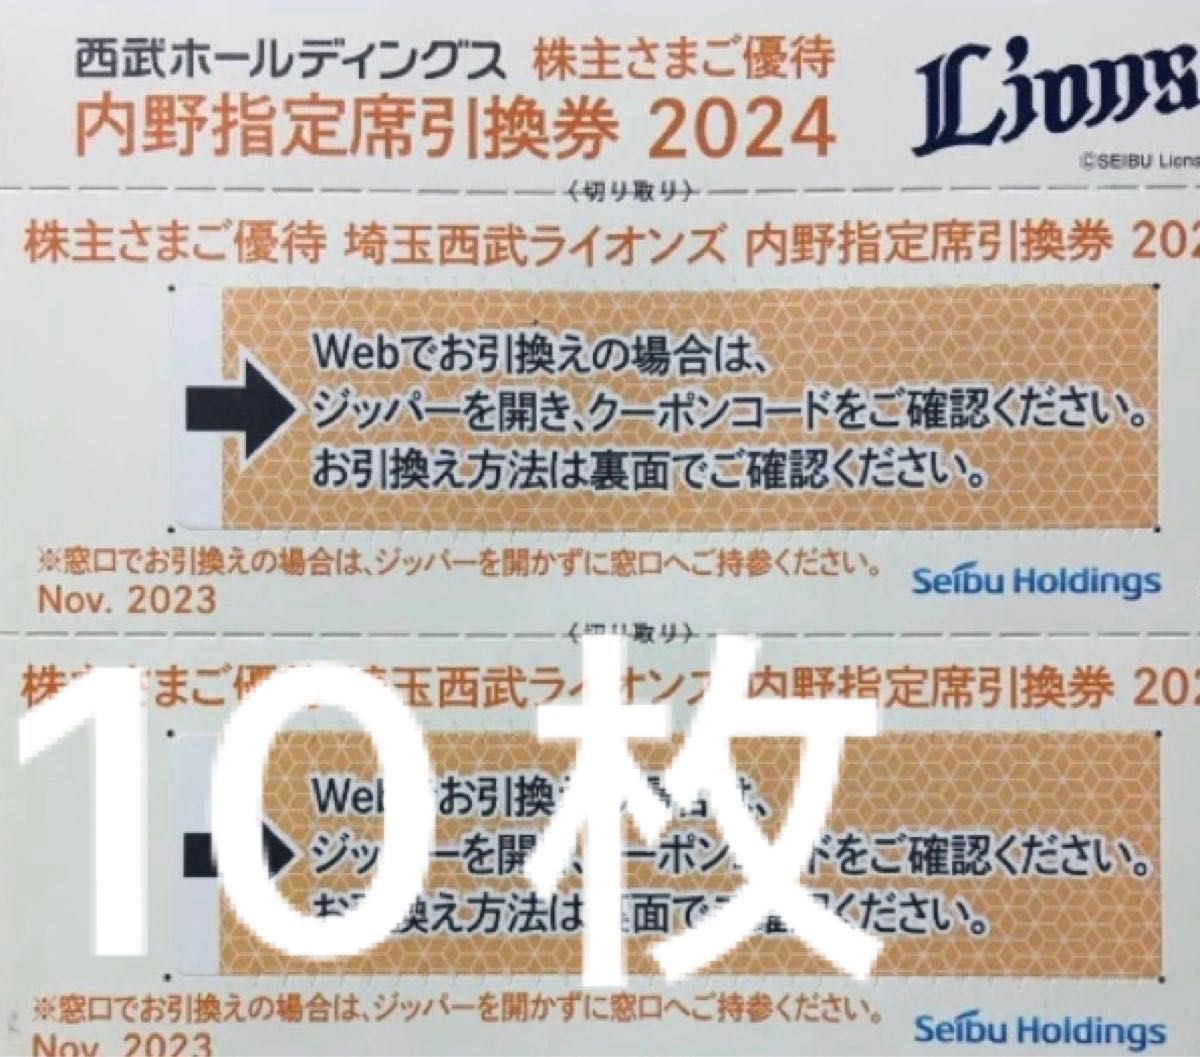 2024年埼玉西武ライオンズ 入会特典 バスタオル&500円クーポン - 野球